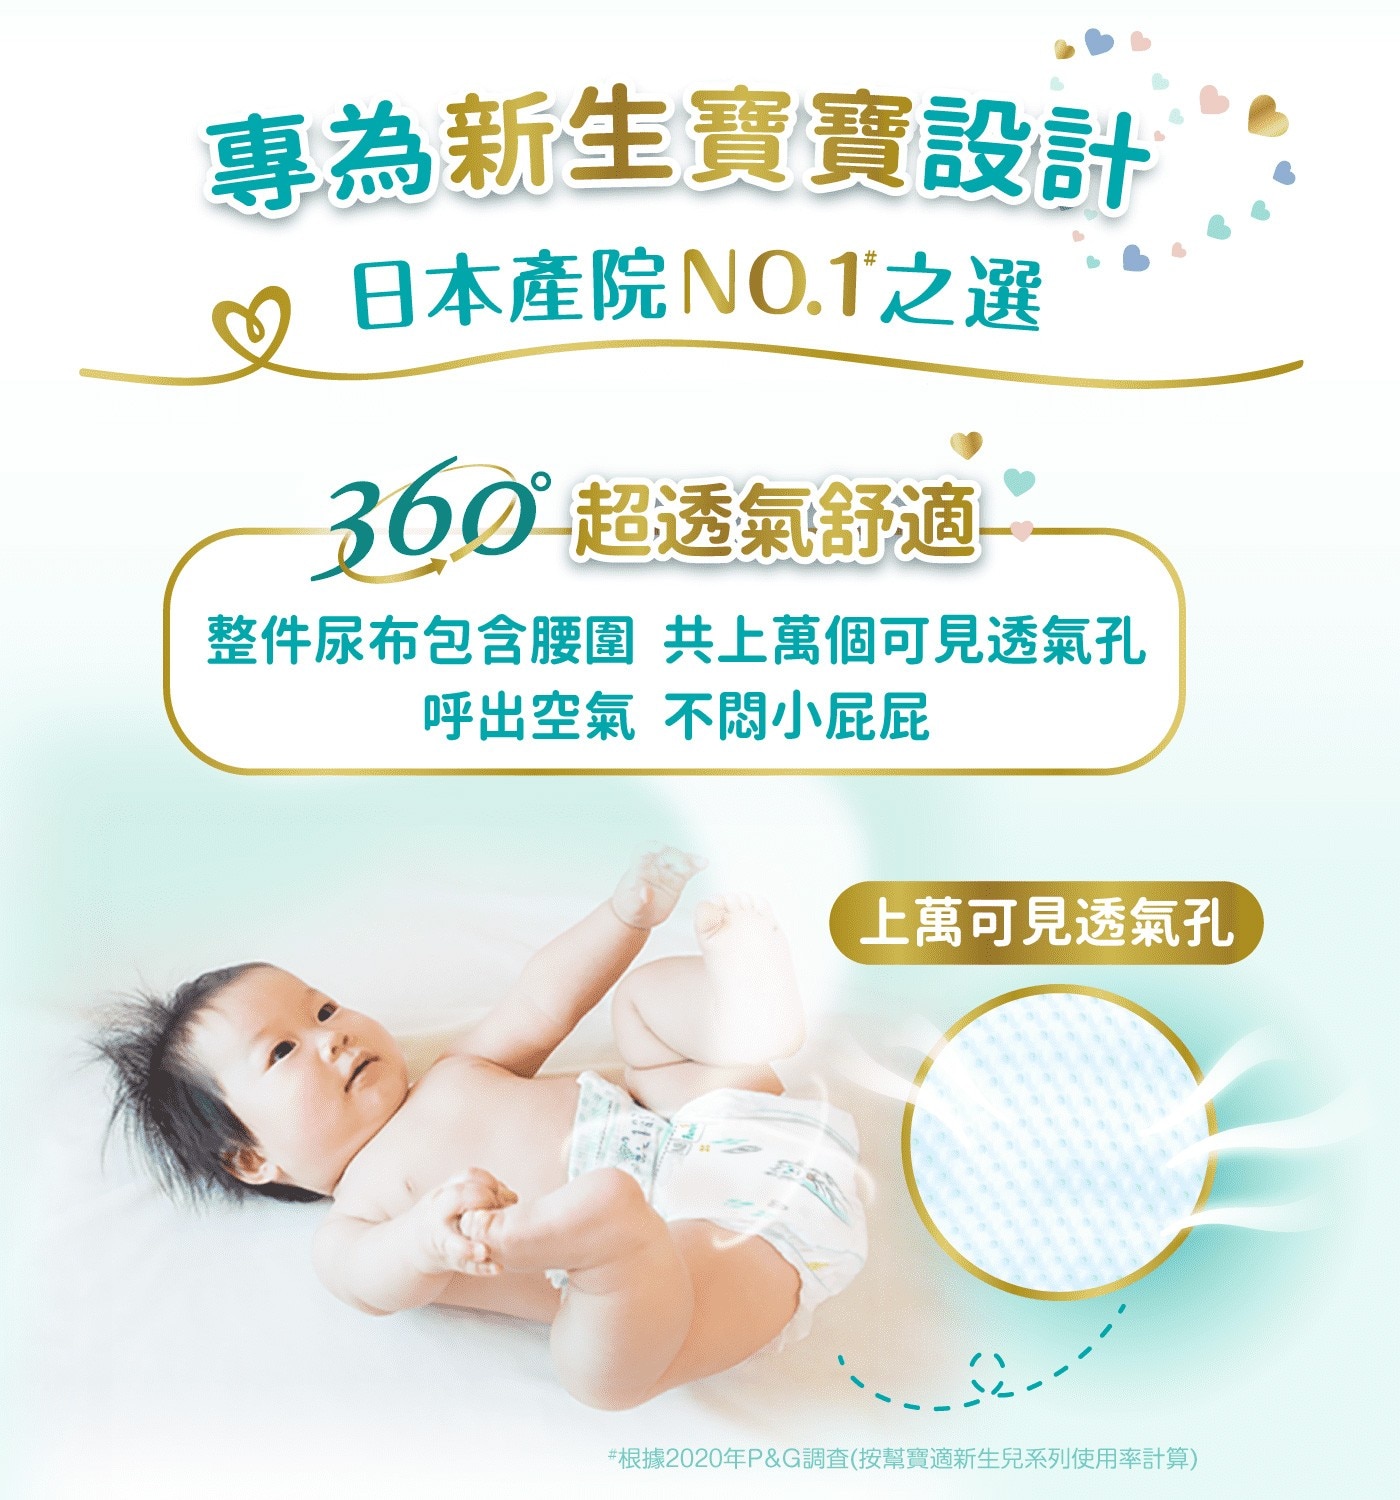 幫寶適一級幫S號專為新生寶寶設計日本產院第一首選整件尿布包含腰圍共上萬個可見透氣孔呼出空氣不悶小屁屁